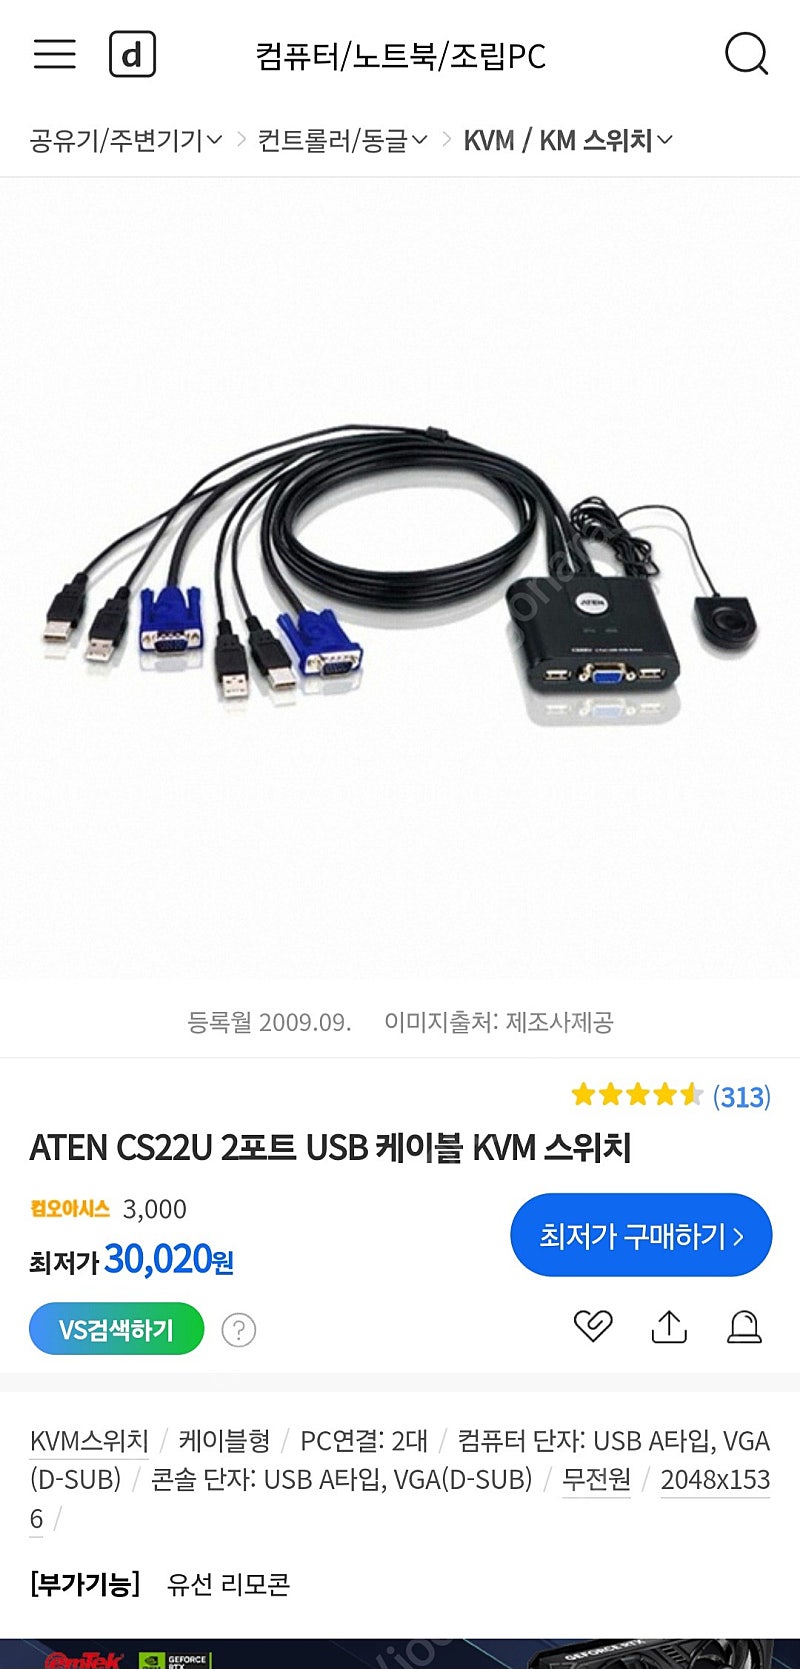 ATEN CS22U 2포트 USB 케이블 KVM 스위치 (반값택배포함)